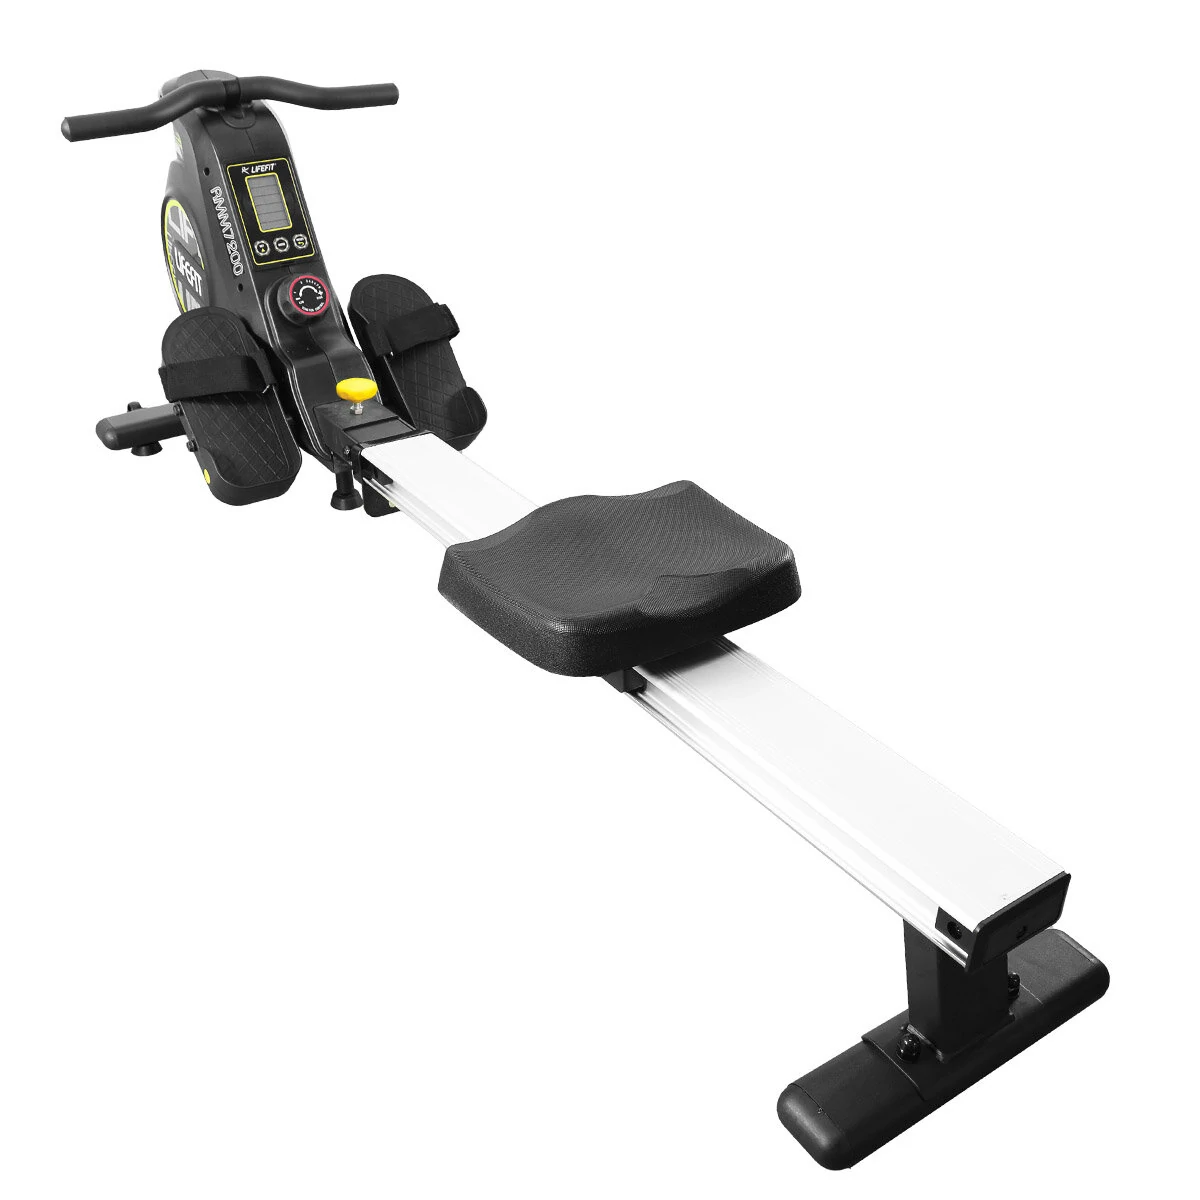 Χαμηλότερη τιμή ως σήμερα στα 316,25€ από αποθήκη Τσεχίας | [EU Direct] LIFEFIT RMM7200 Rowing Machine 100kg Max Load Capacity Folding Adjustable Machine with LCD Digital Monitor Fully Body Health Fitness for Home Gym Use